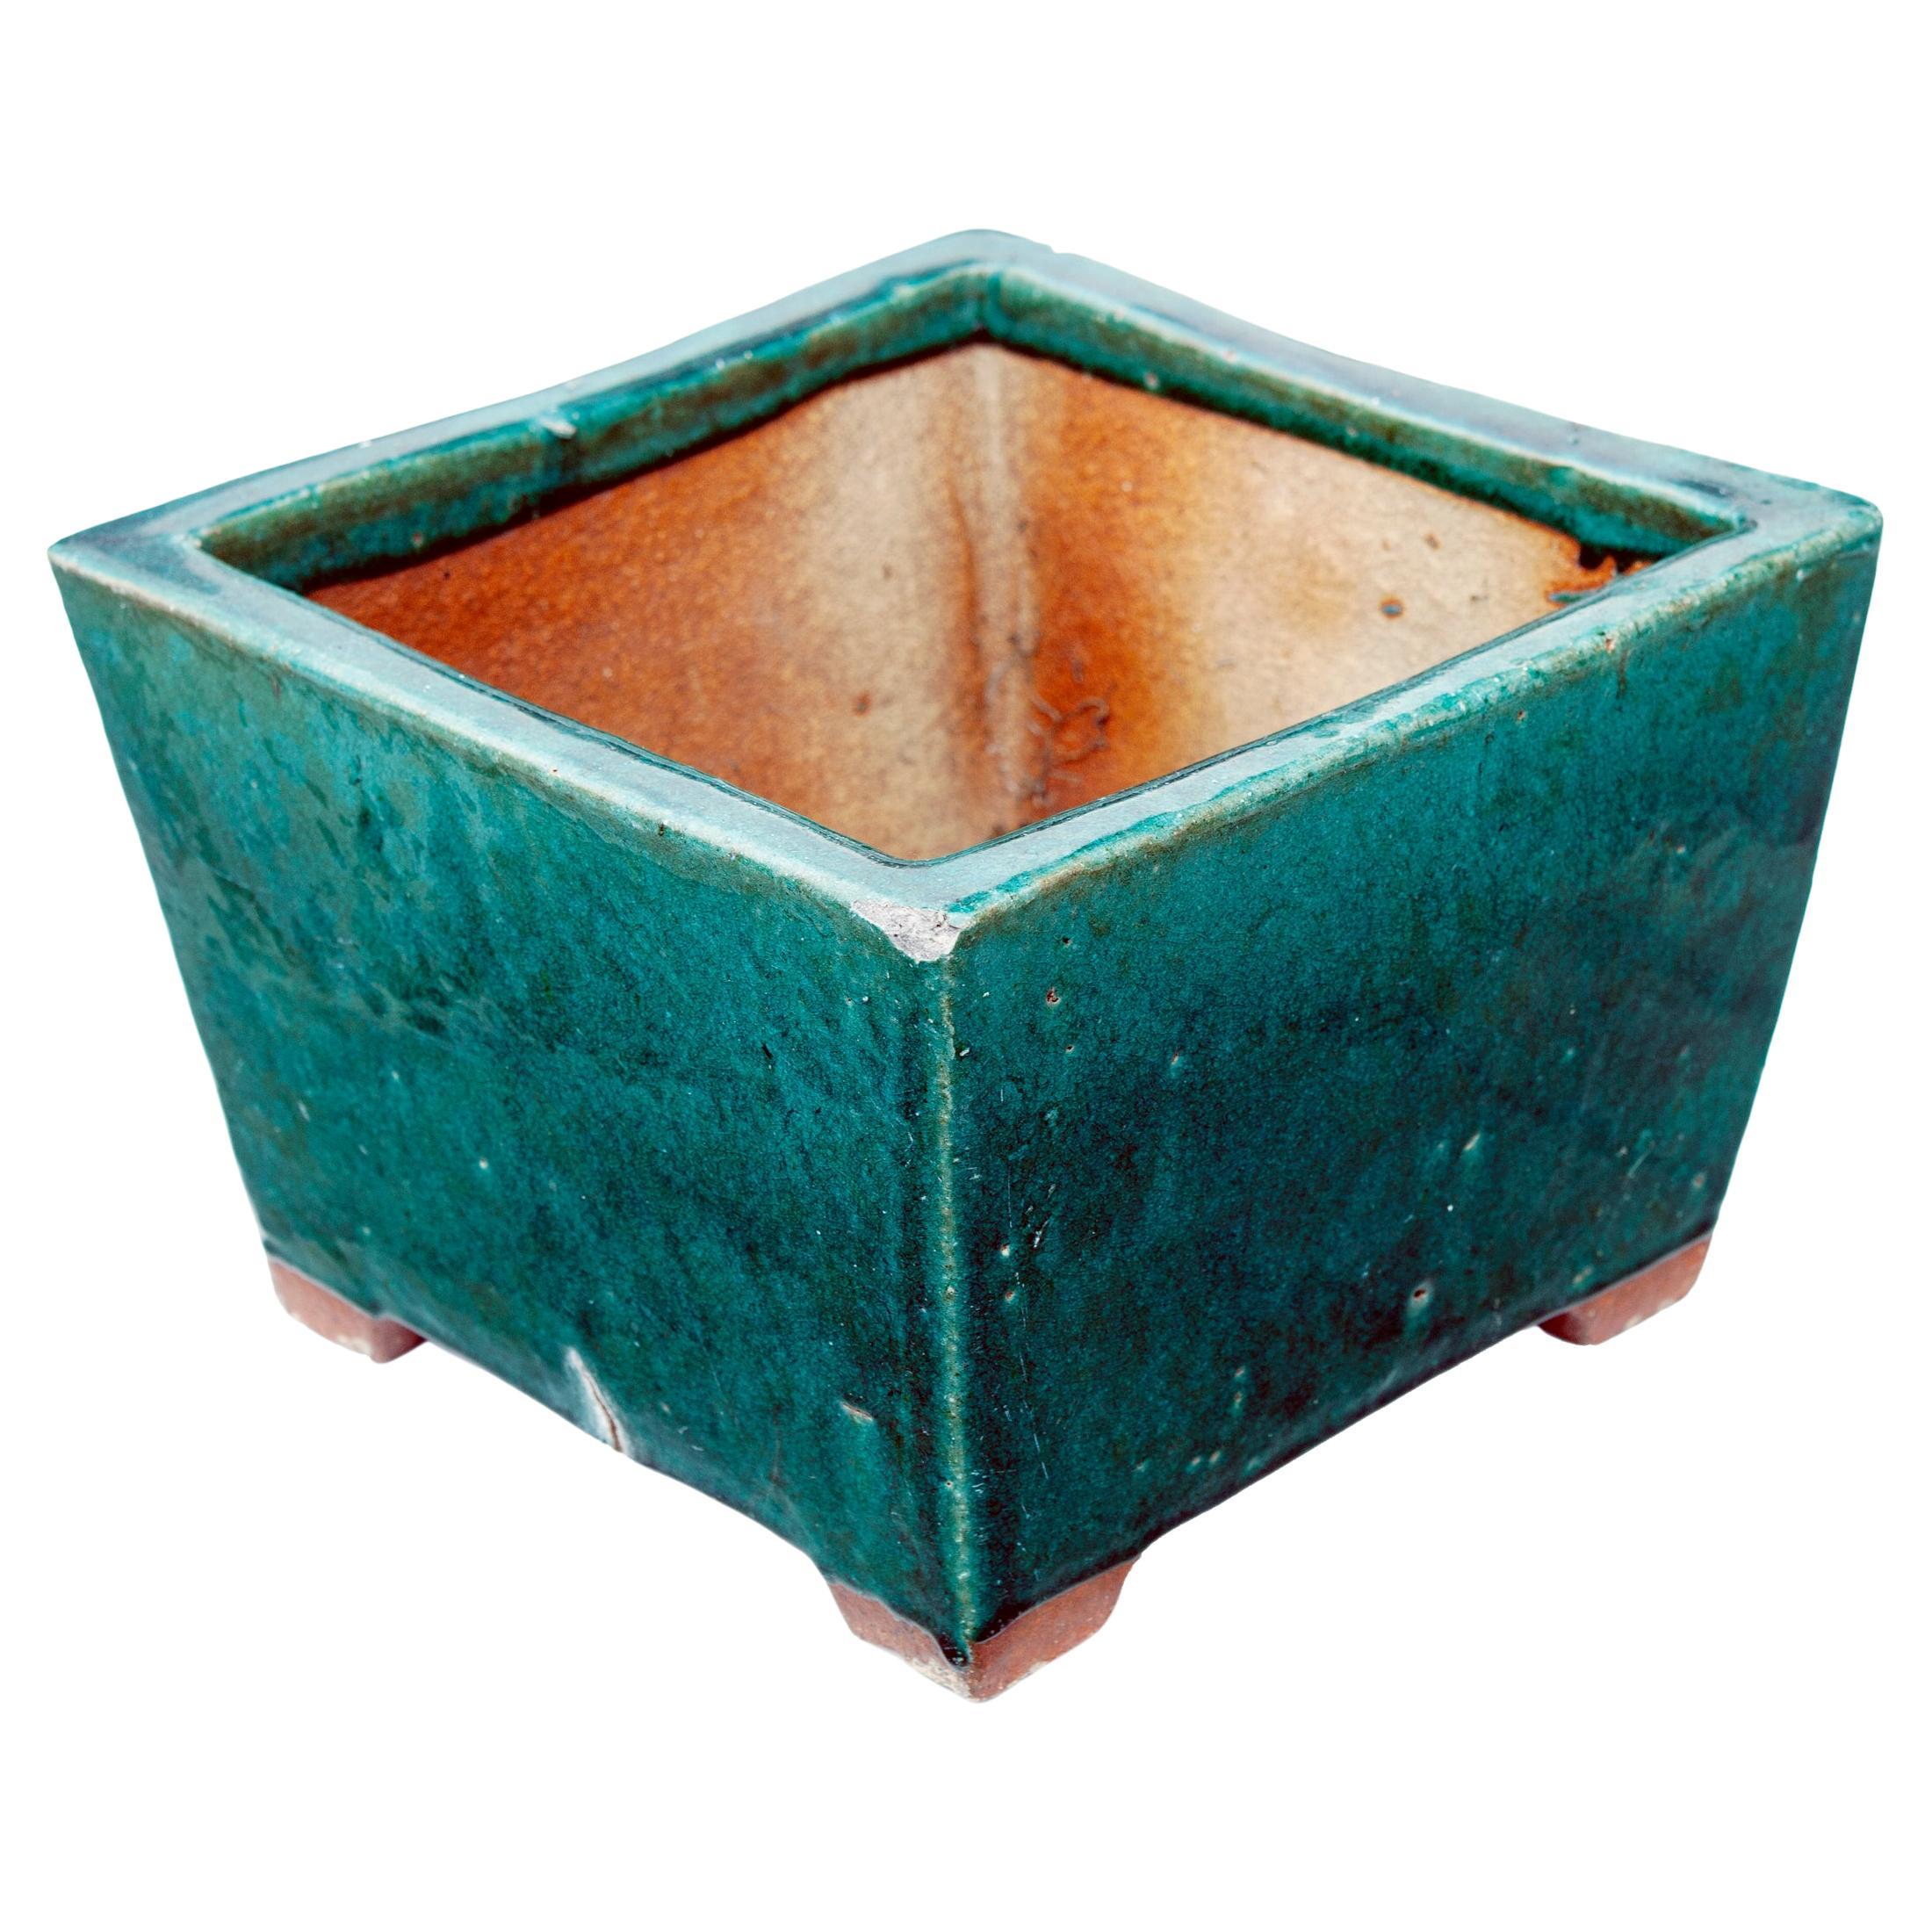 Ein quadratischer Pflanzkübel aus Terrakotta im Vintage-Stil mit einer smaragdgrünen Glasur. Das Pflanzgefäß ist handgefertigt und hat eine gewellte Textur, ein einzigartiges und schönes Stück. Das Pflanzgefäß ist unsigniert, die quadratische Form